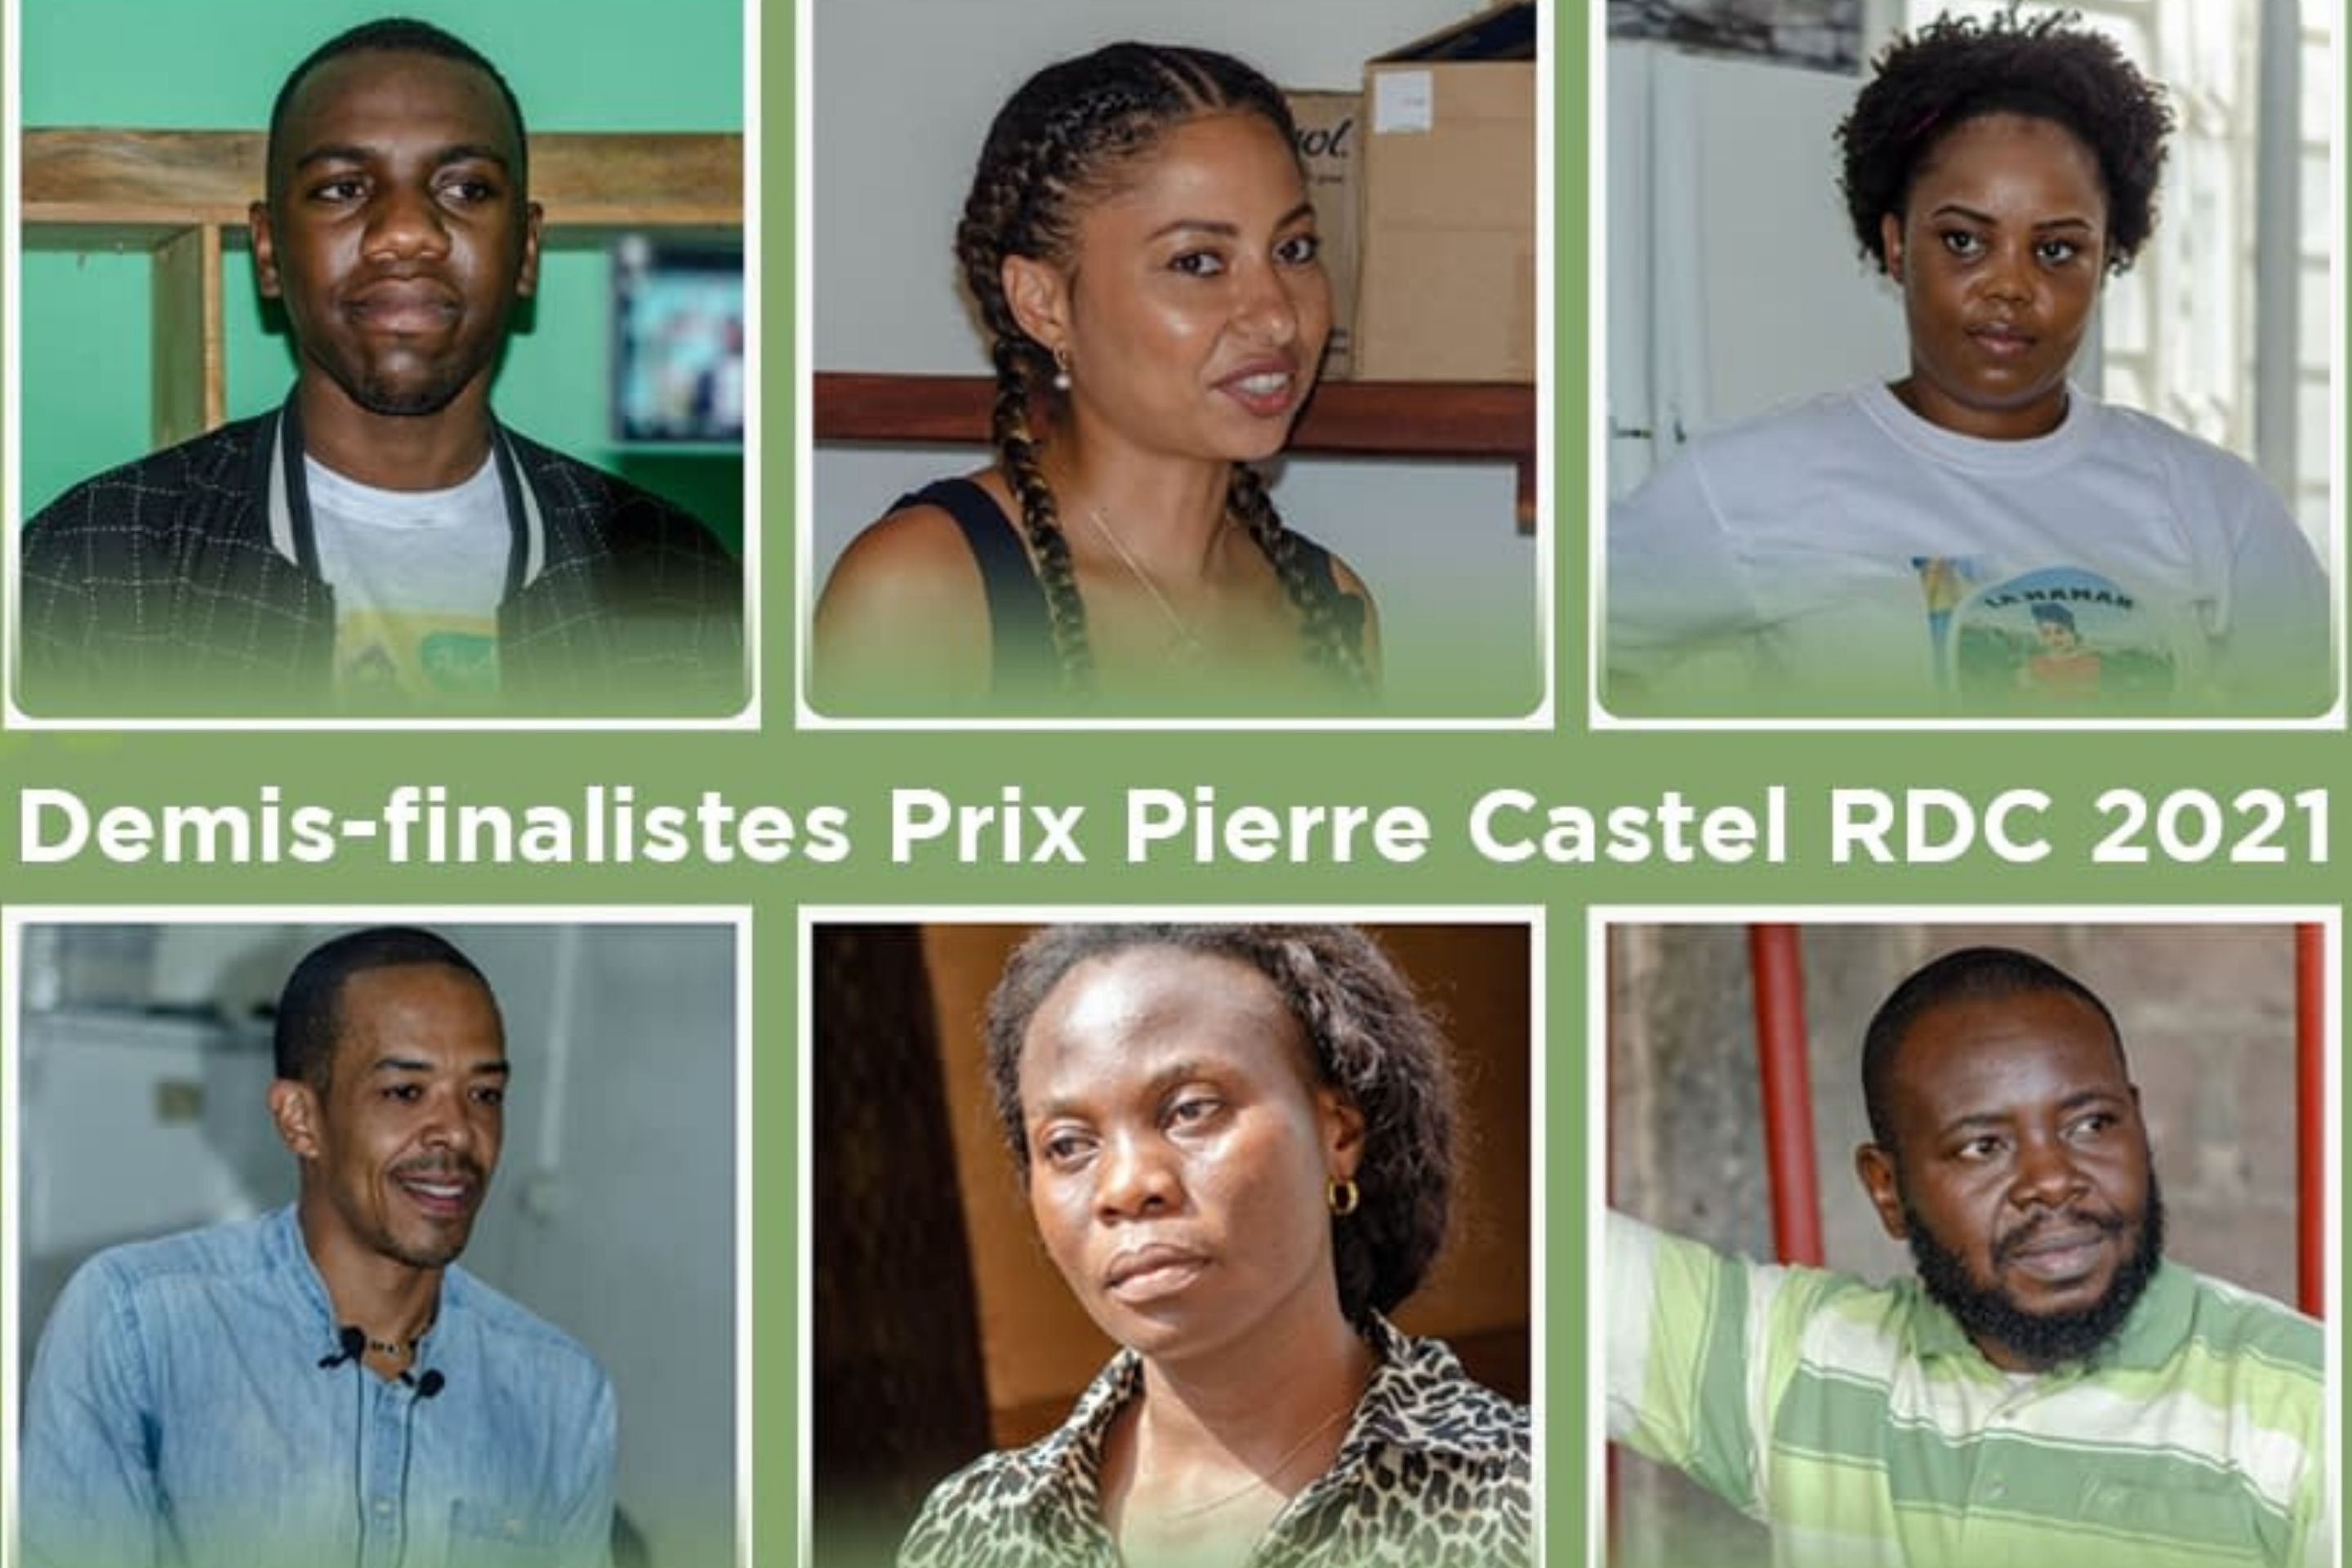 demi-finalistes PPC 2021 RDC